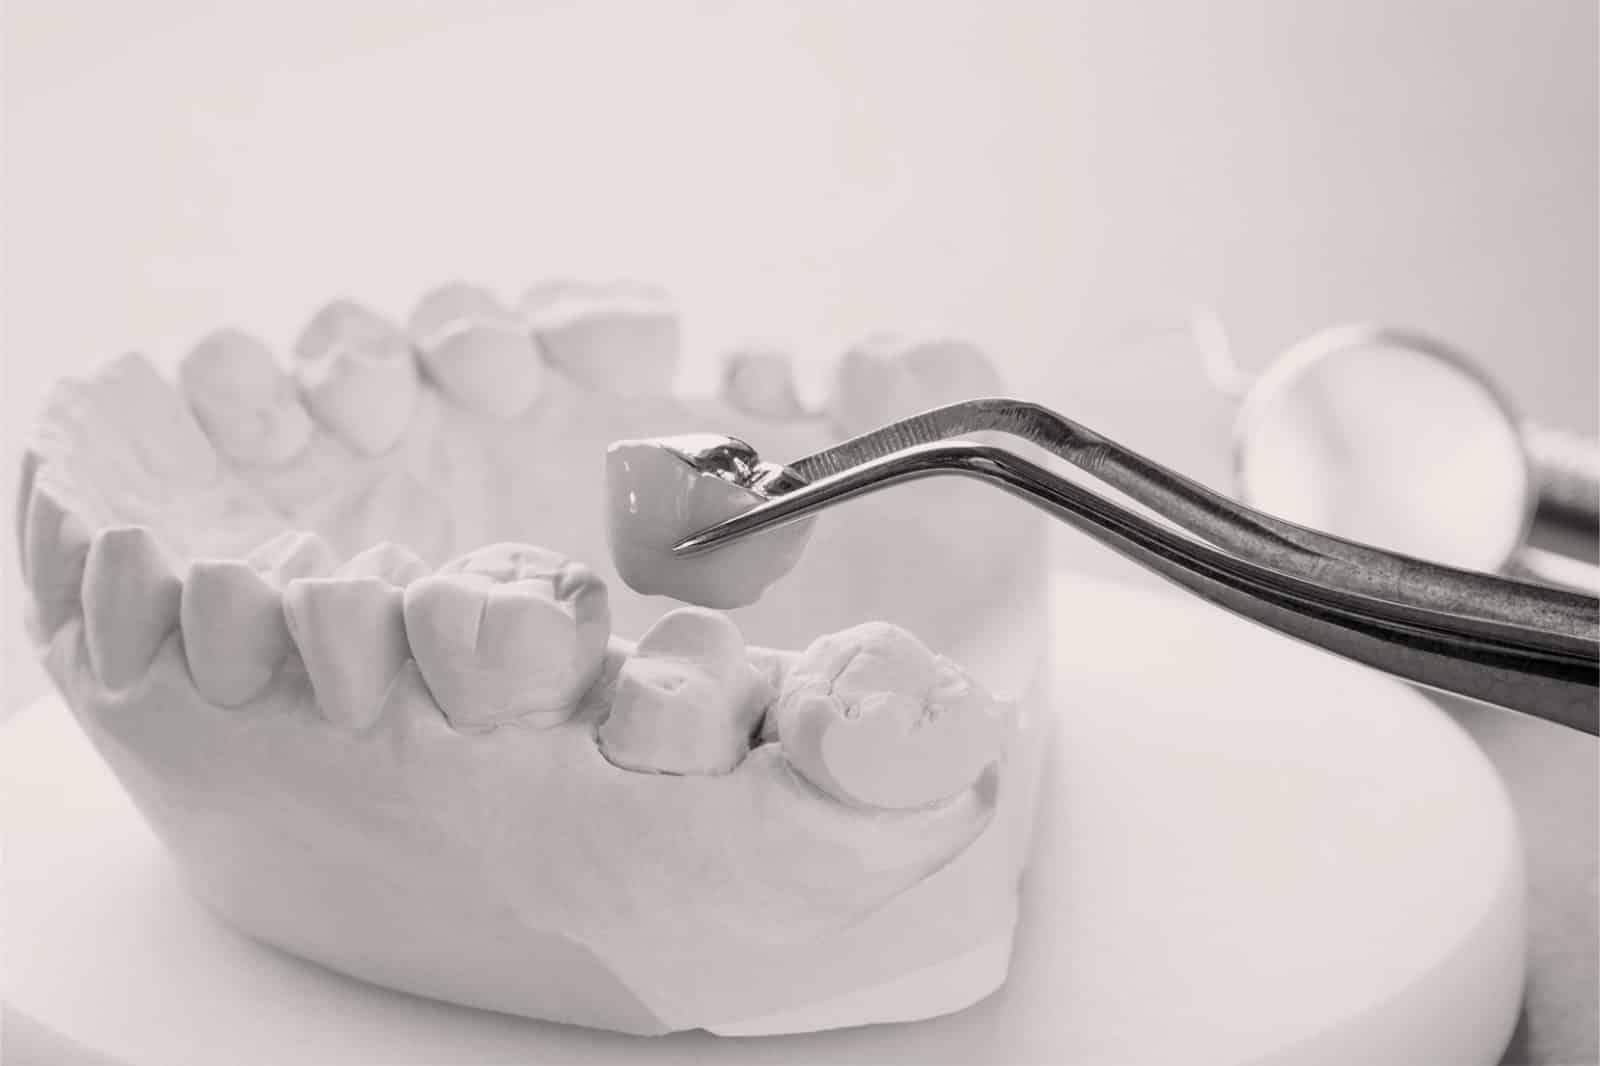 Les prothèses et autres traitements pour l’esthétique dentaire à Lyon